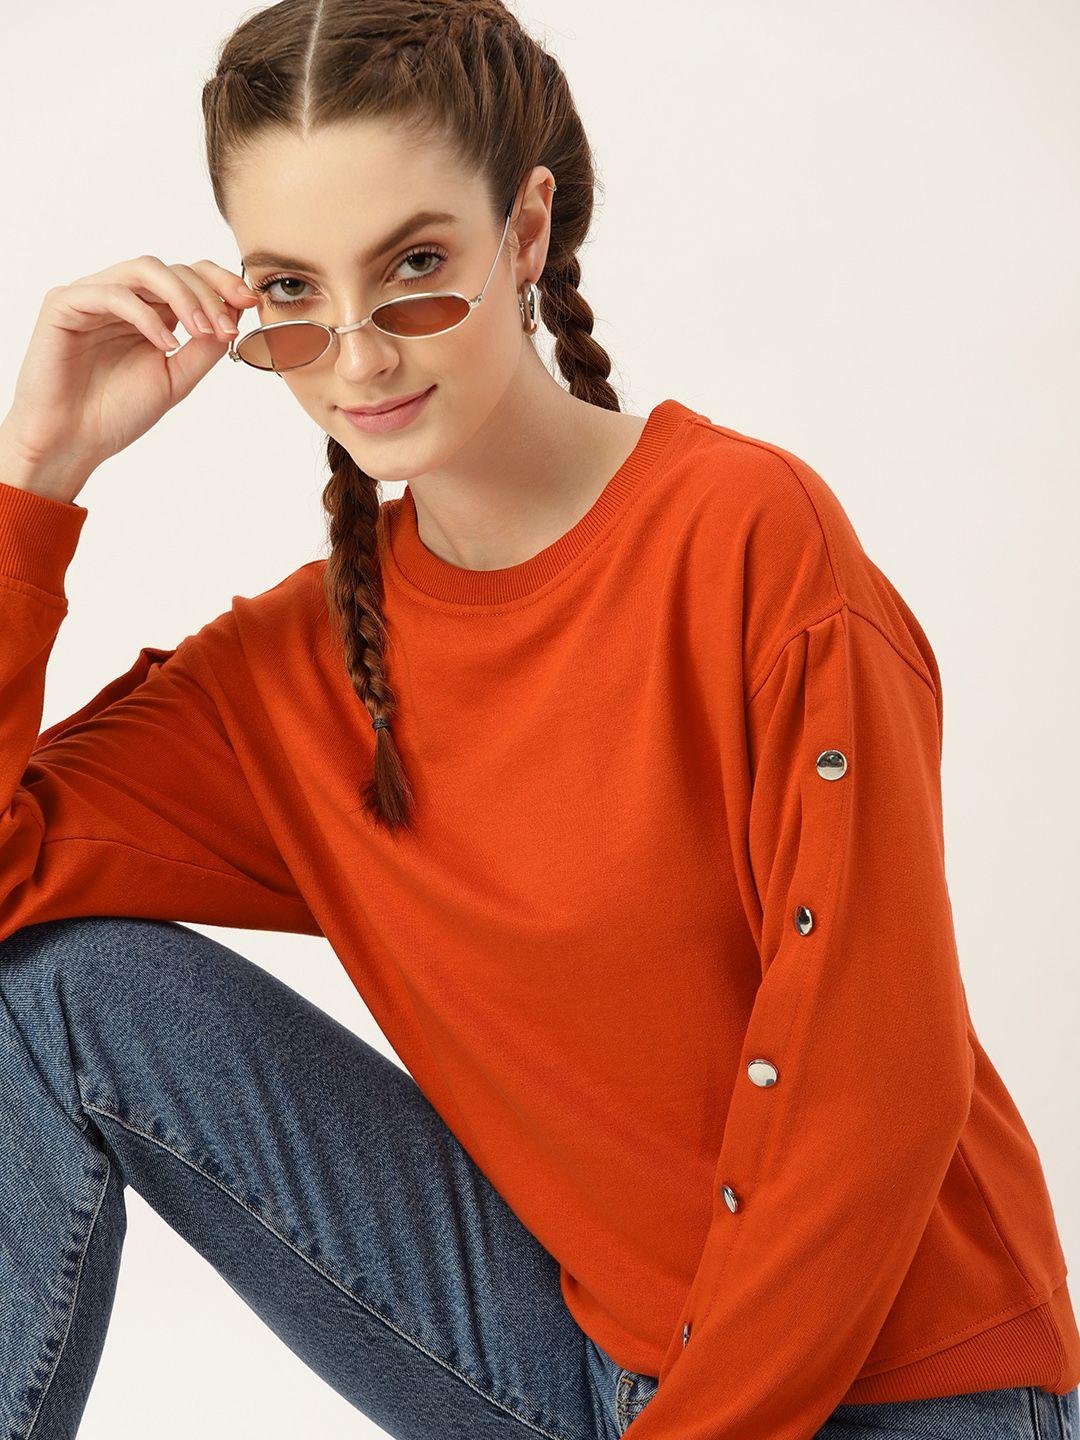 dressberry-women-rust-orange-solid-sweatshirt